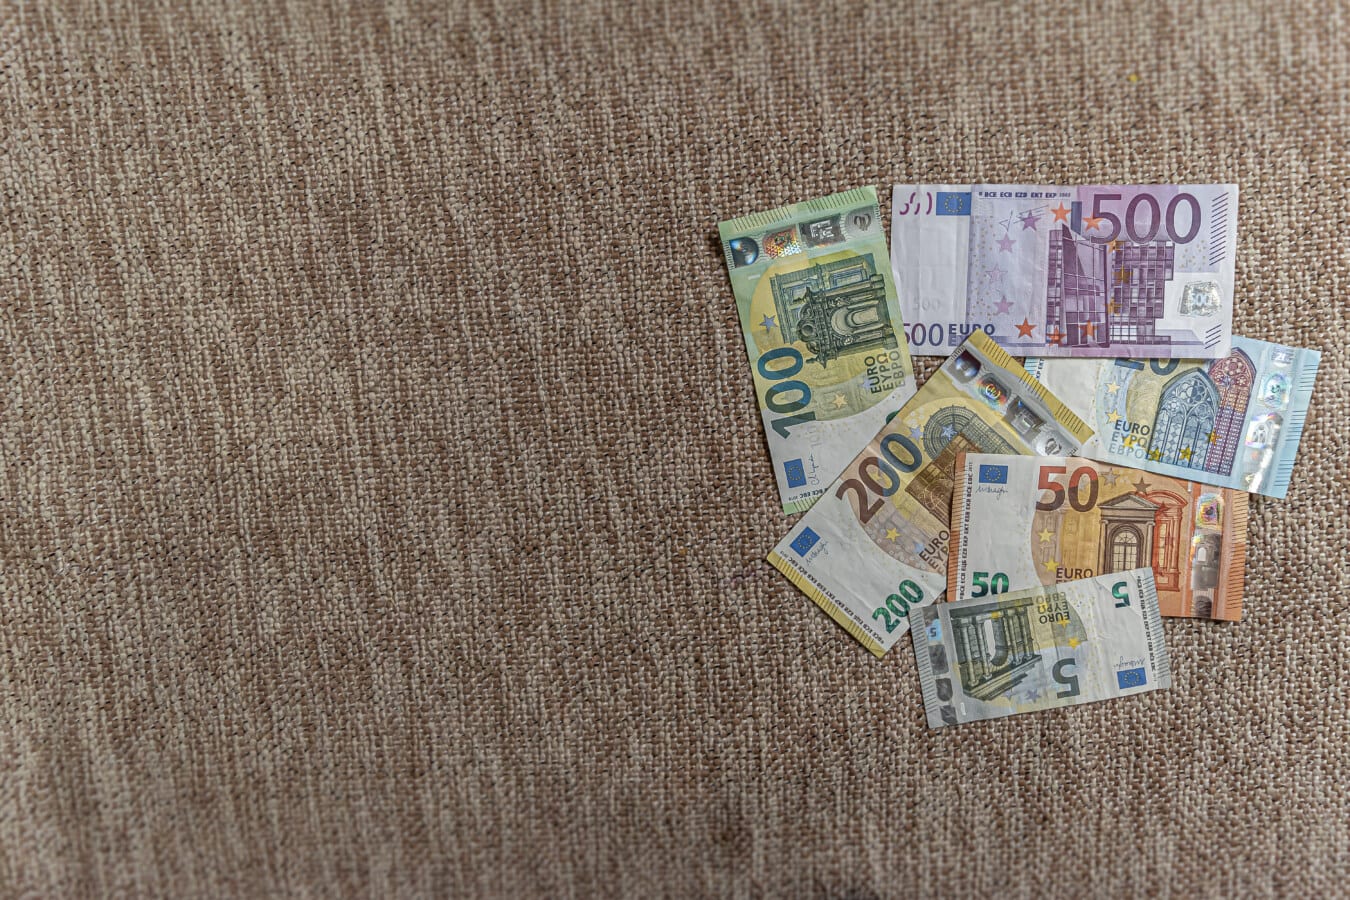 Kasa talouden kasvua kuvaavia euro- (€) paperiseteleitä